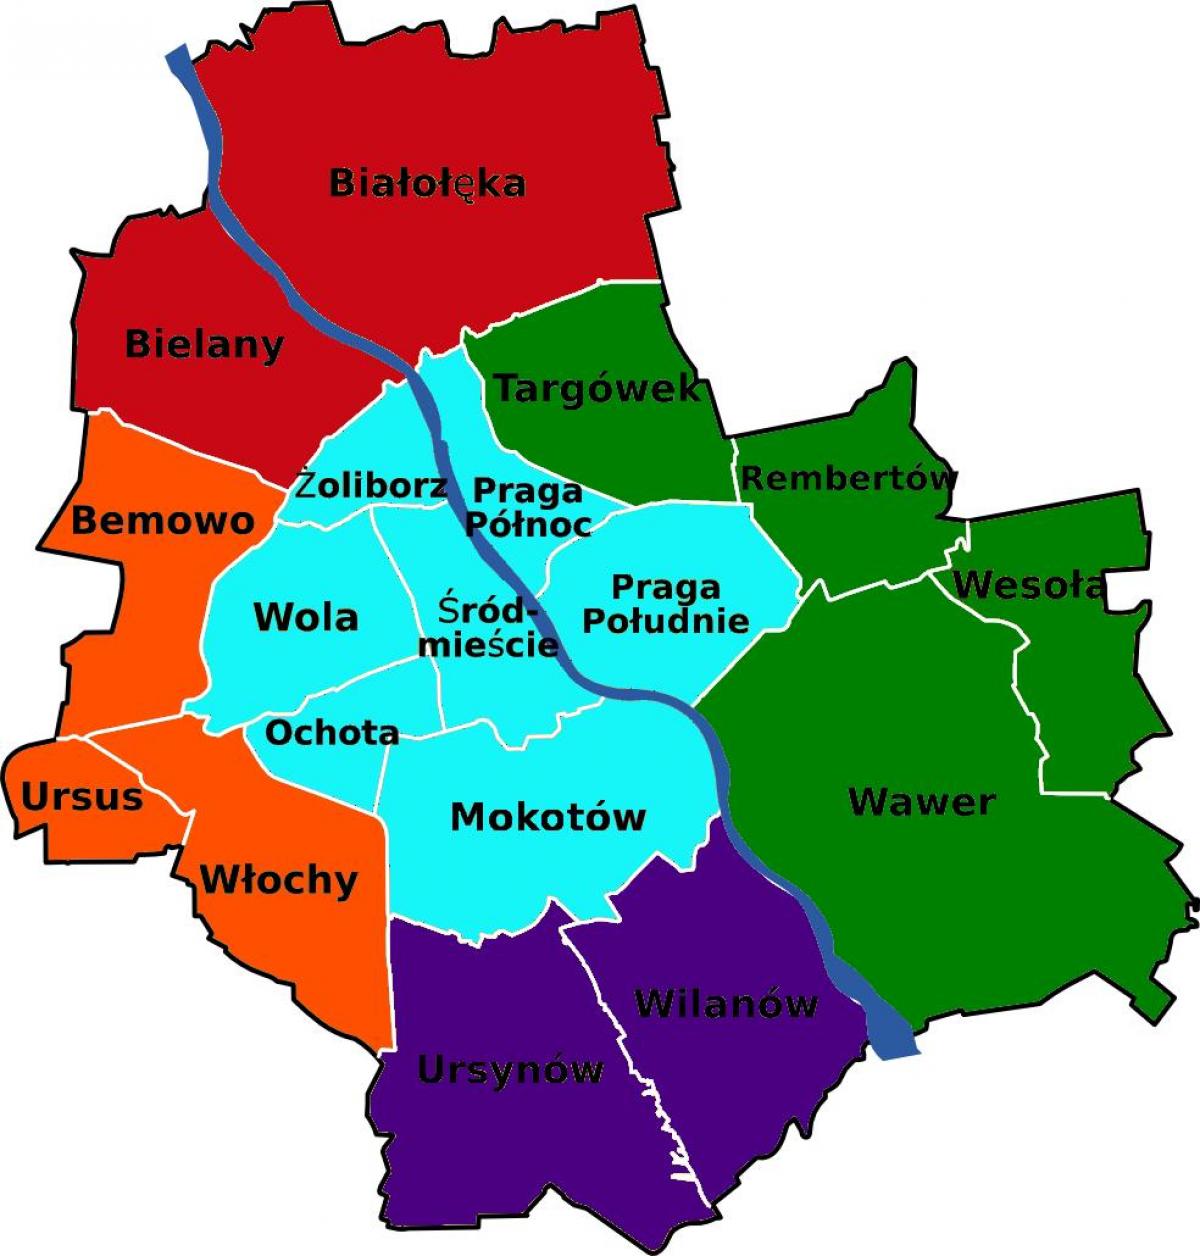 Карта районов Варшавы 